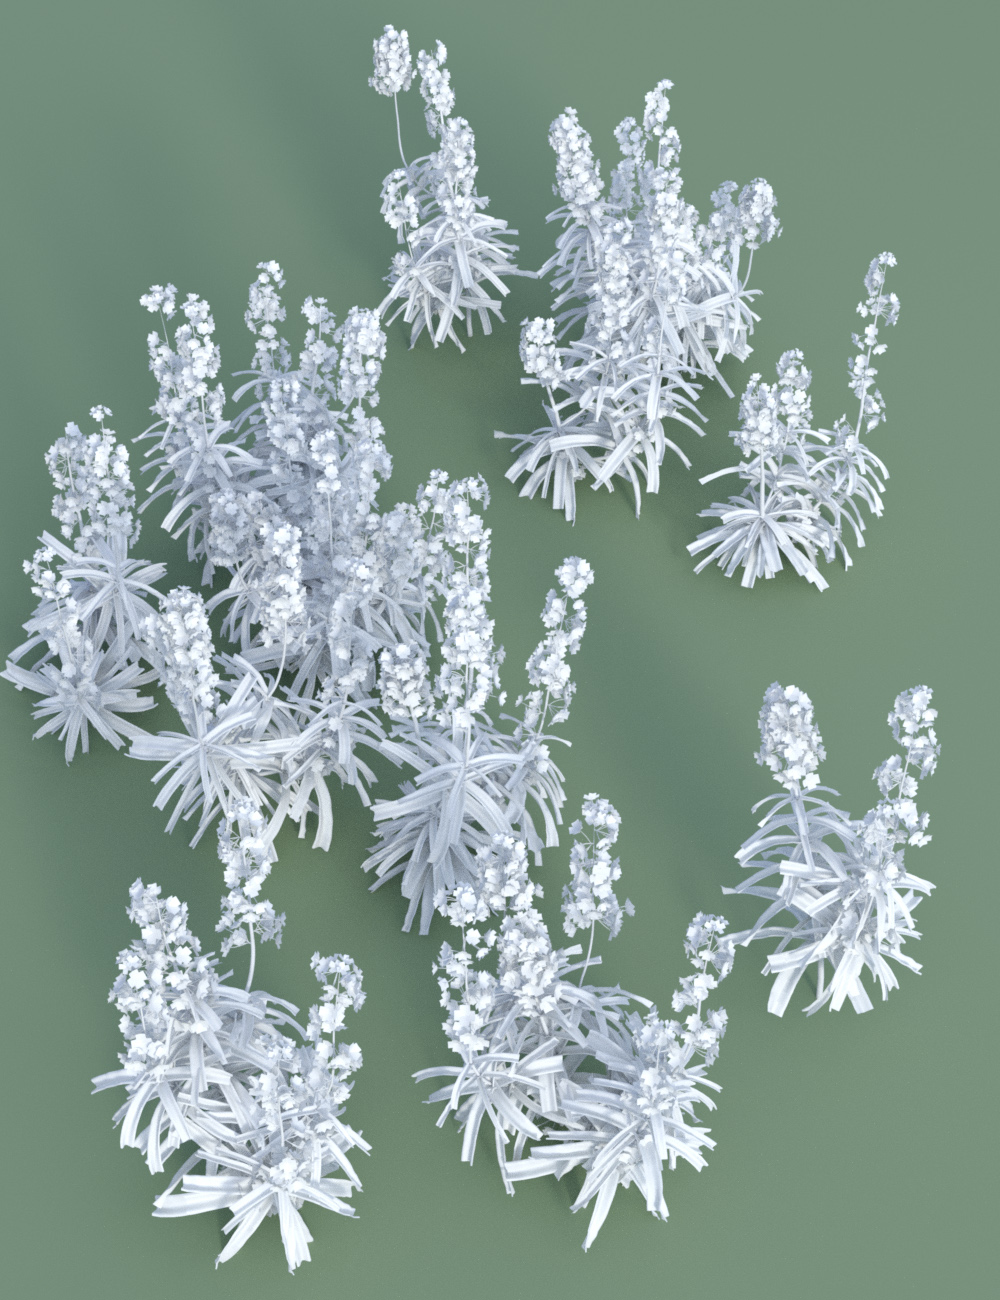 Garden Flowers - Wall Flowers by: MartinJFrost, 3D Models by Daz 3D